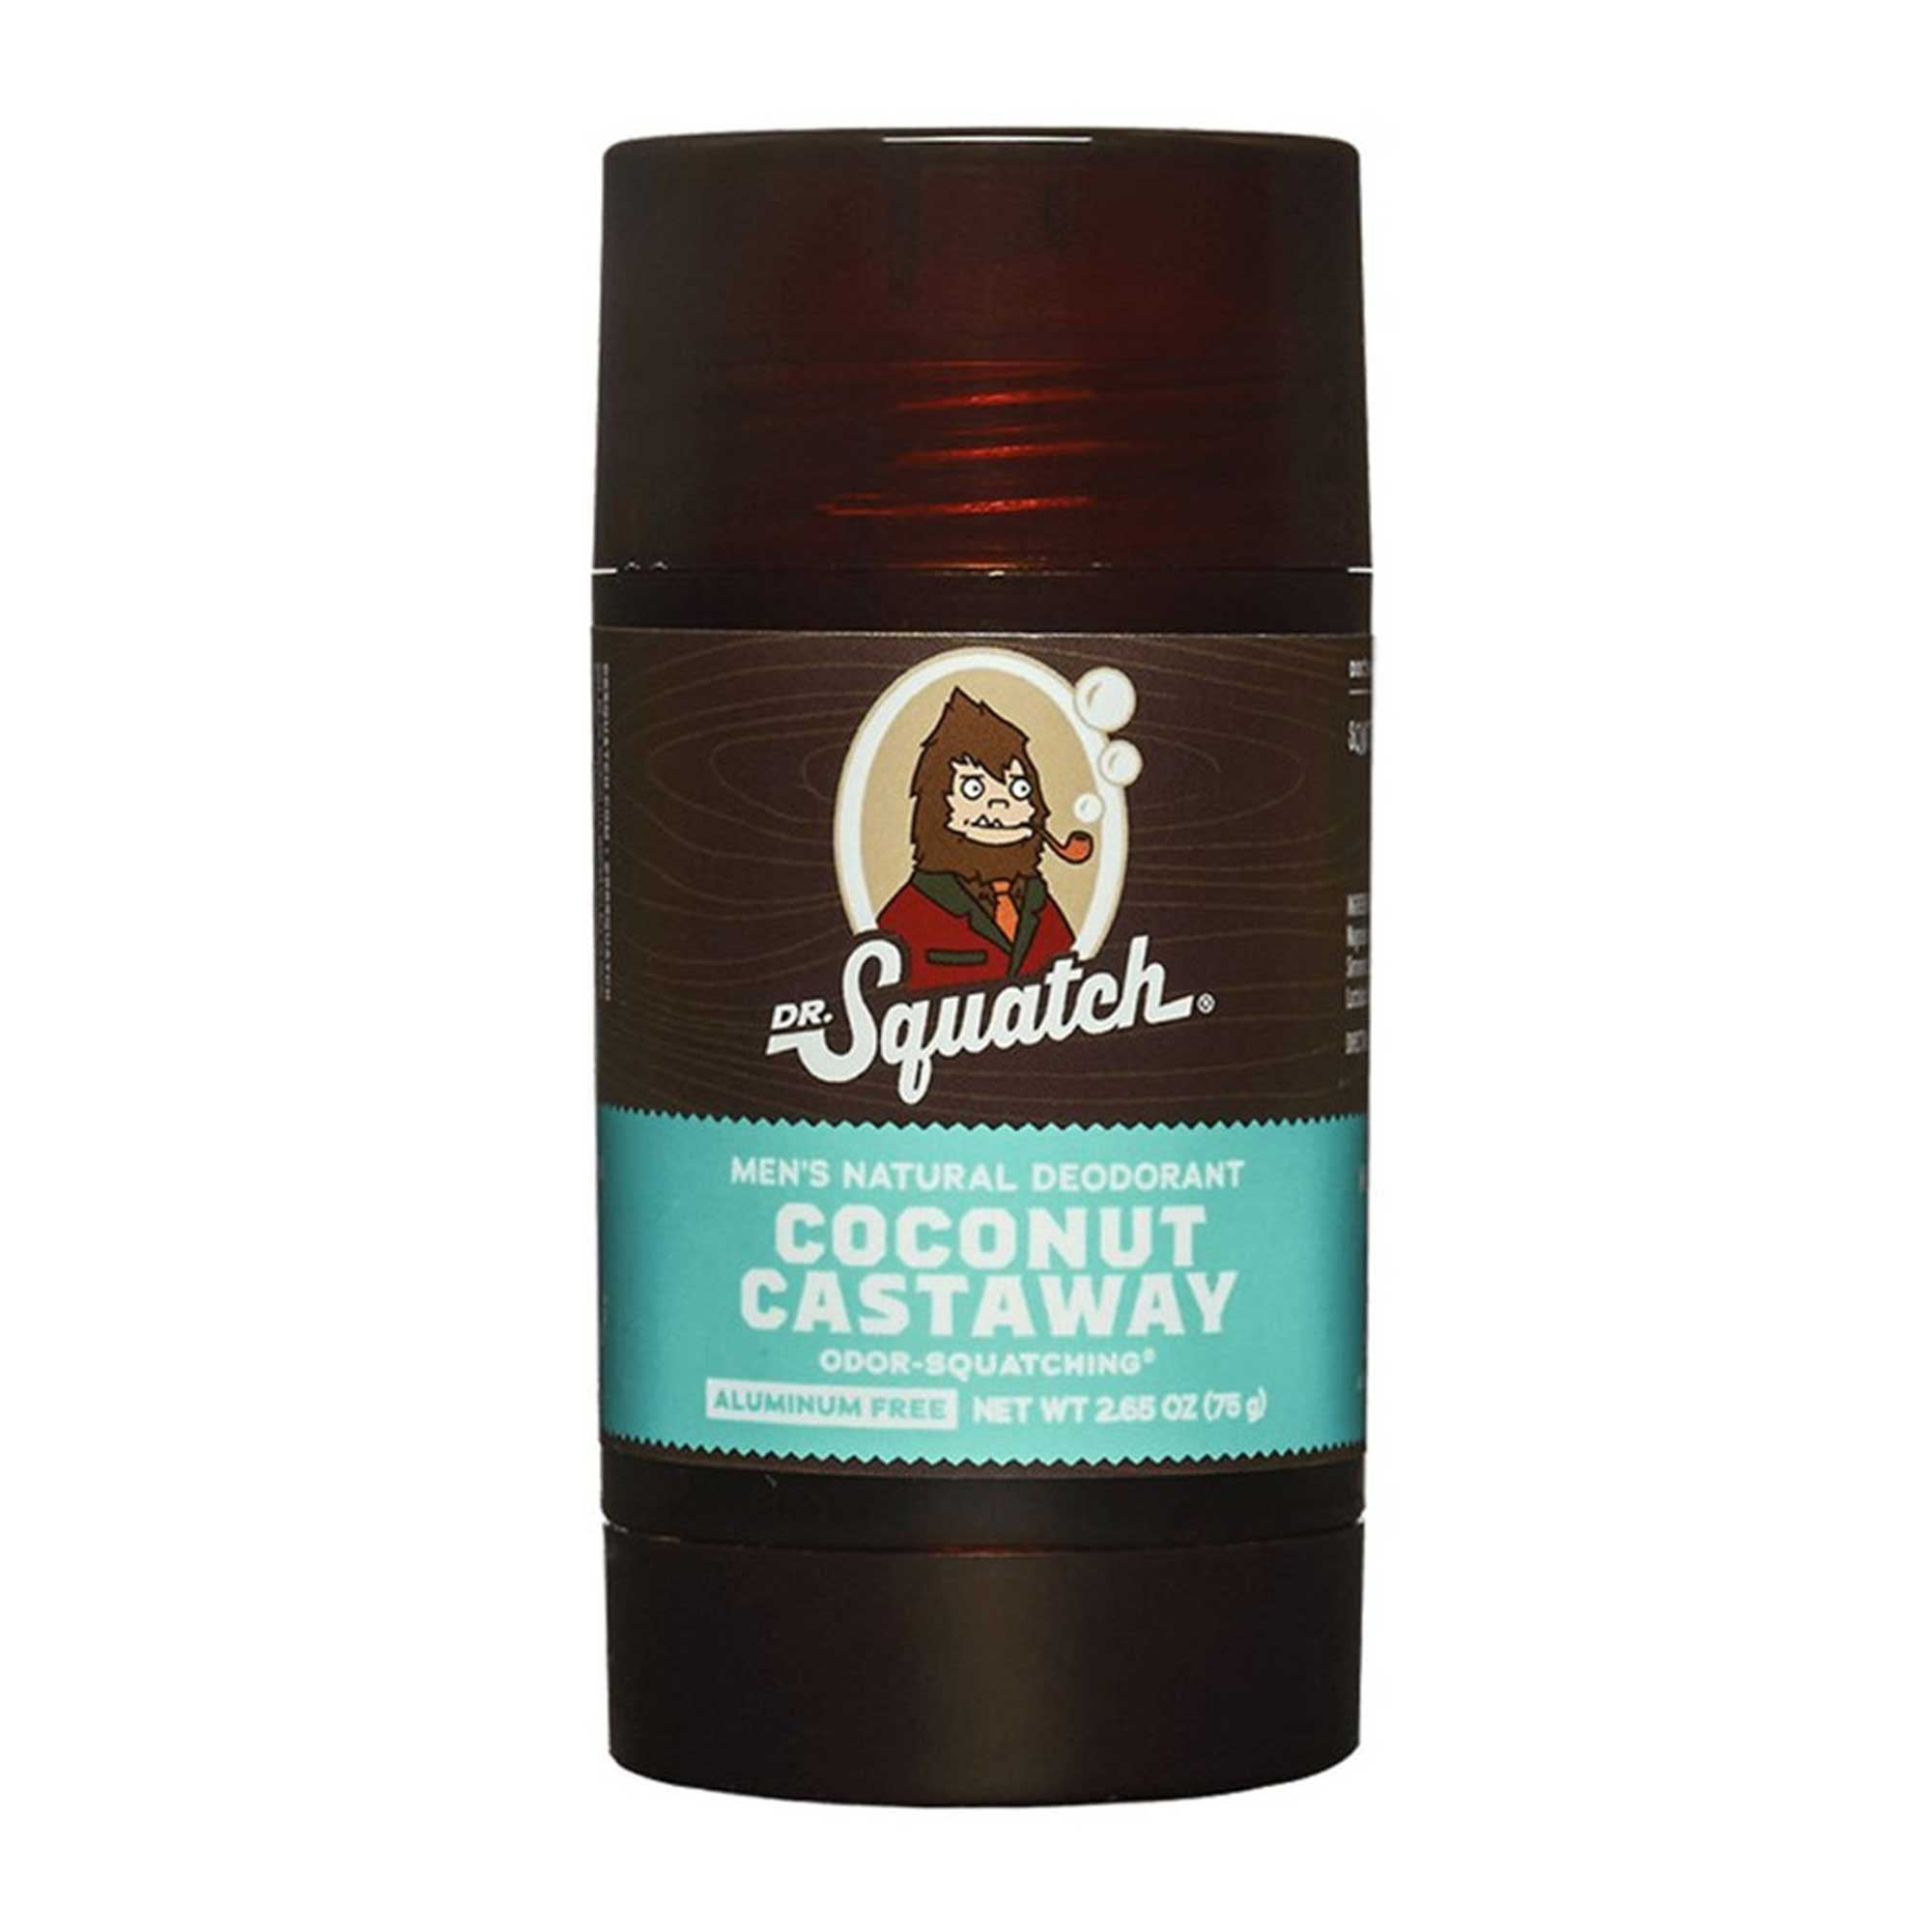 Dr Squatch's Coconut Castaway Bar Soap Review 